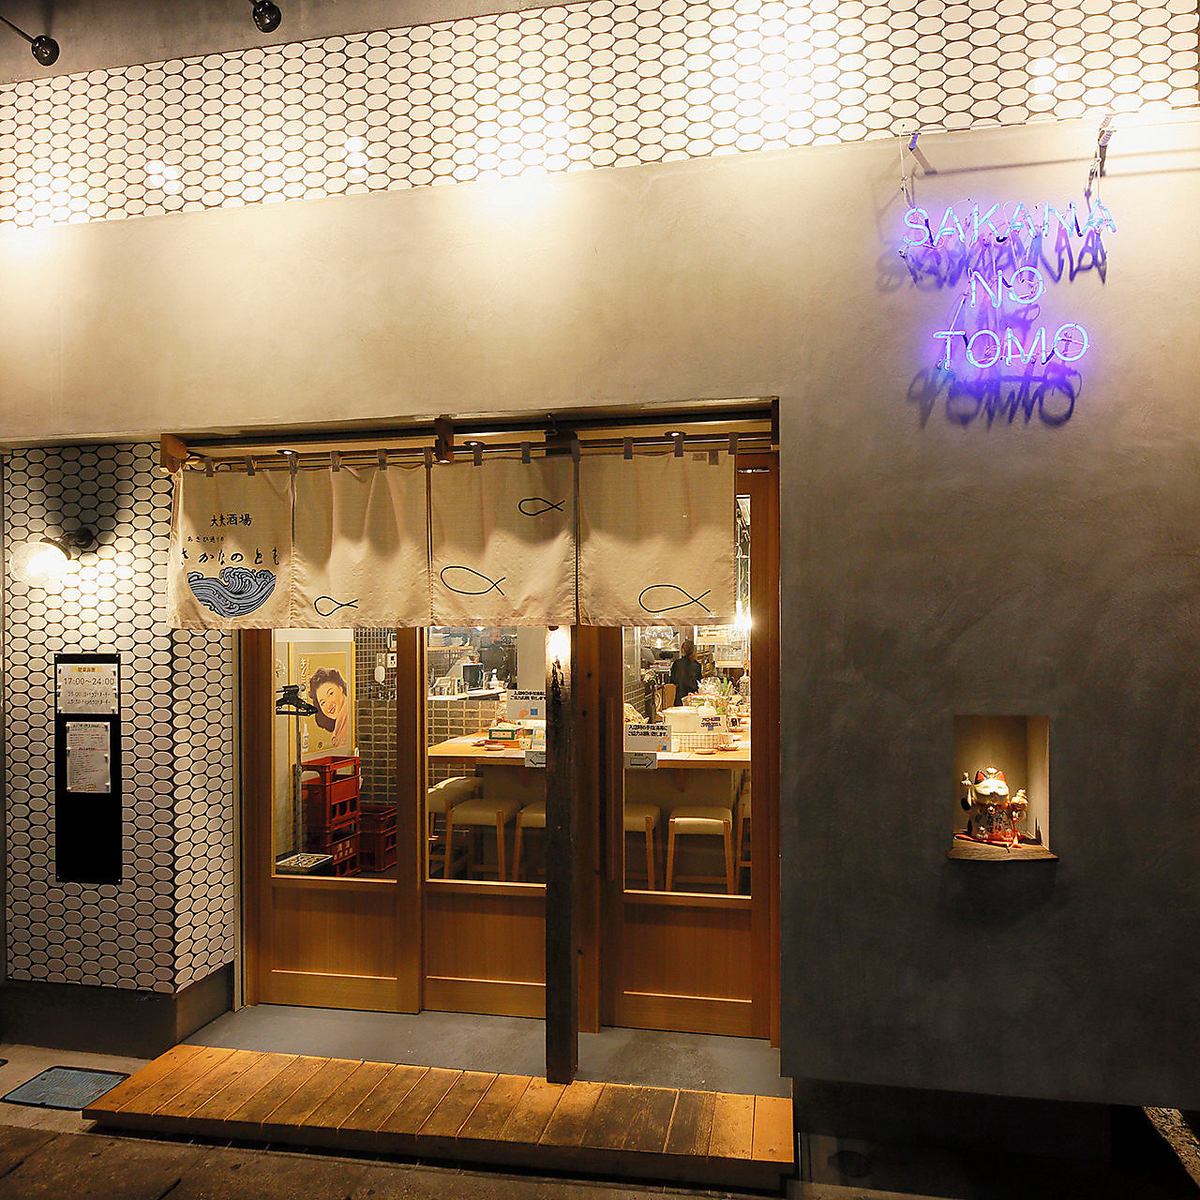 从柏西口步行4分钟。第二家 Sakananotomo 店将于 11 月作为公共酒吧开业。还提供私人房间座位